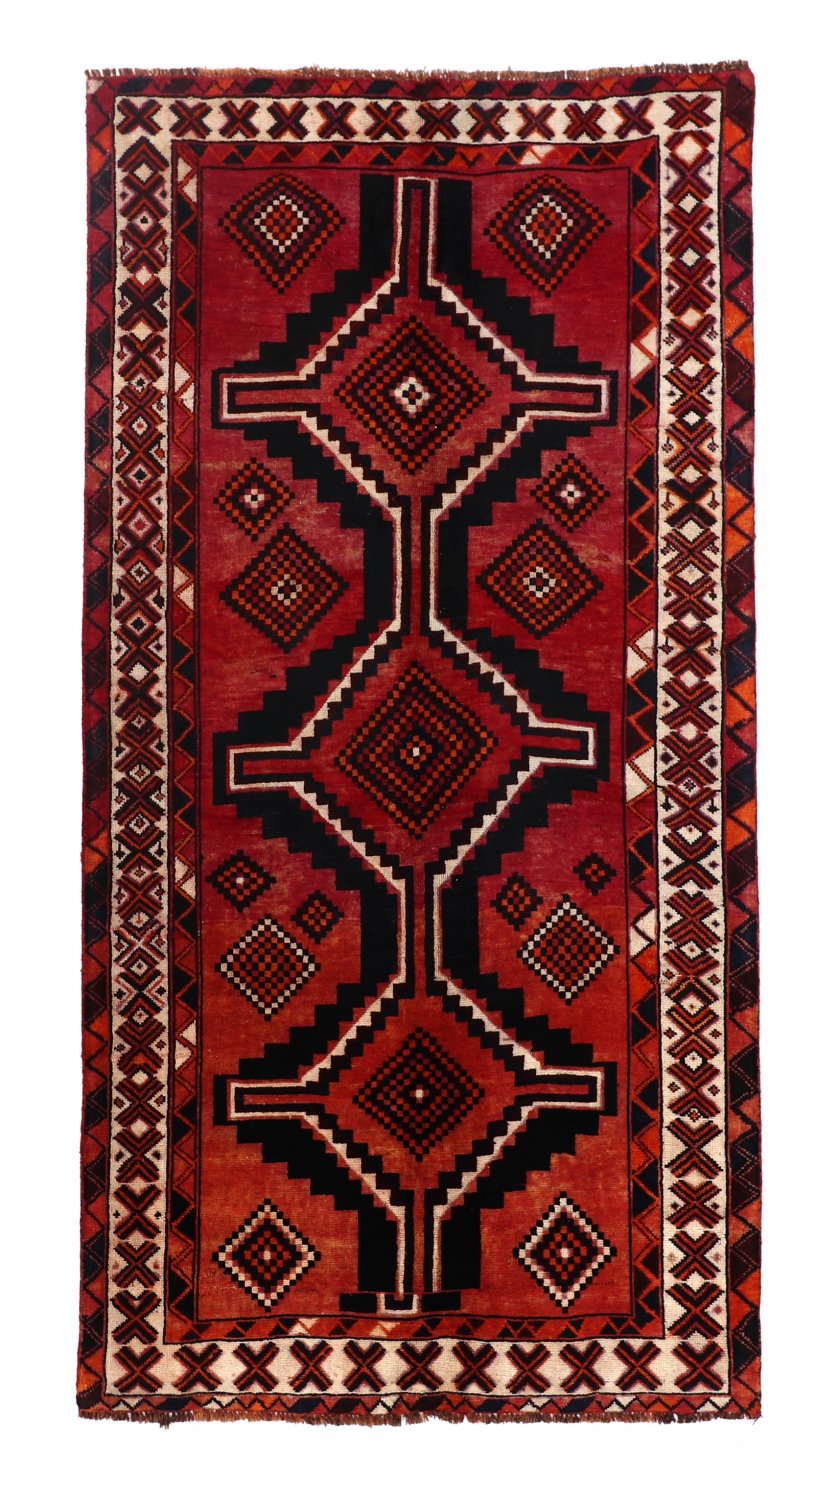 Persian rug Hamedan 252 x 139 cm